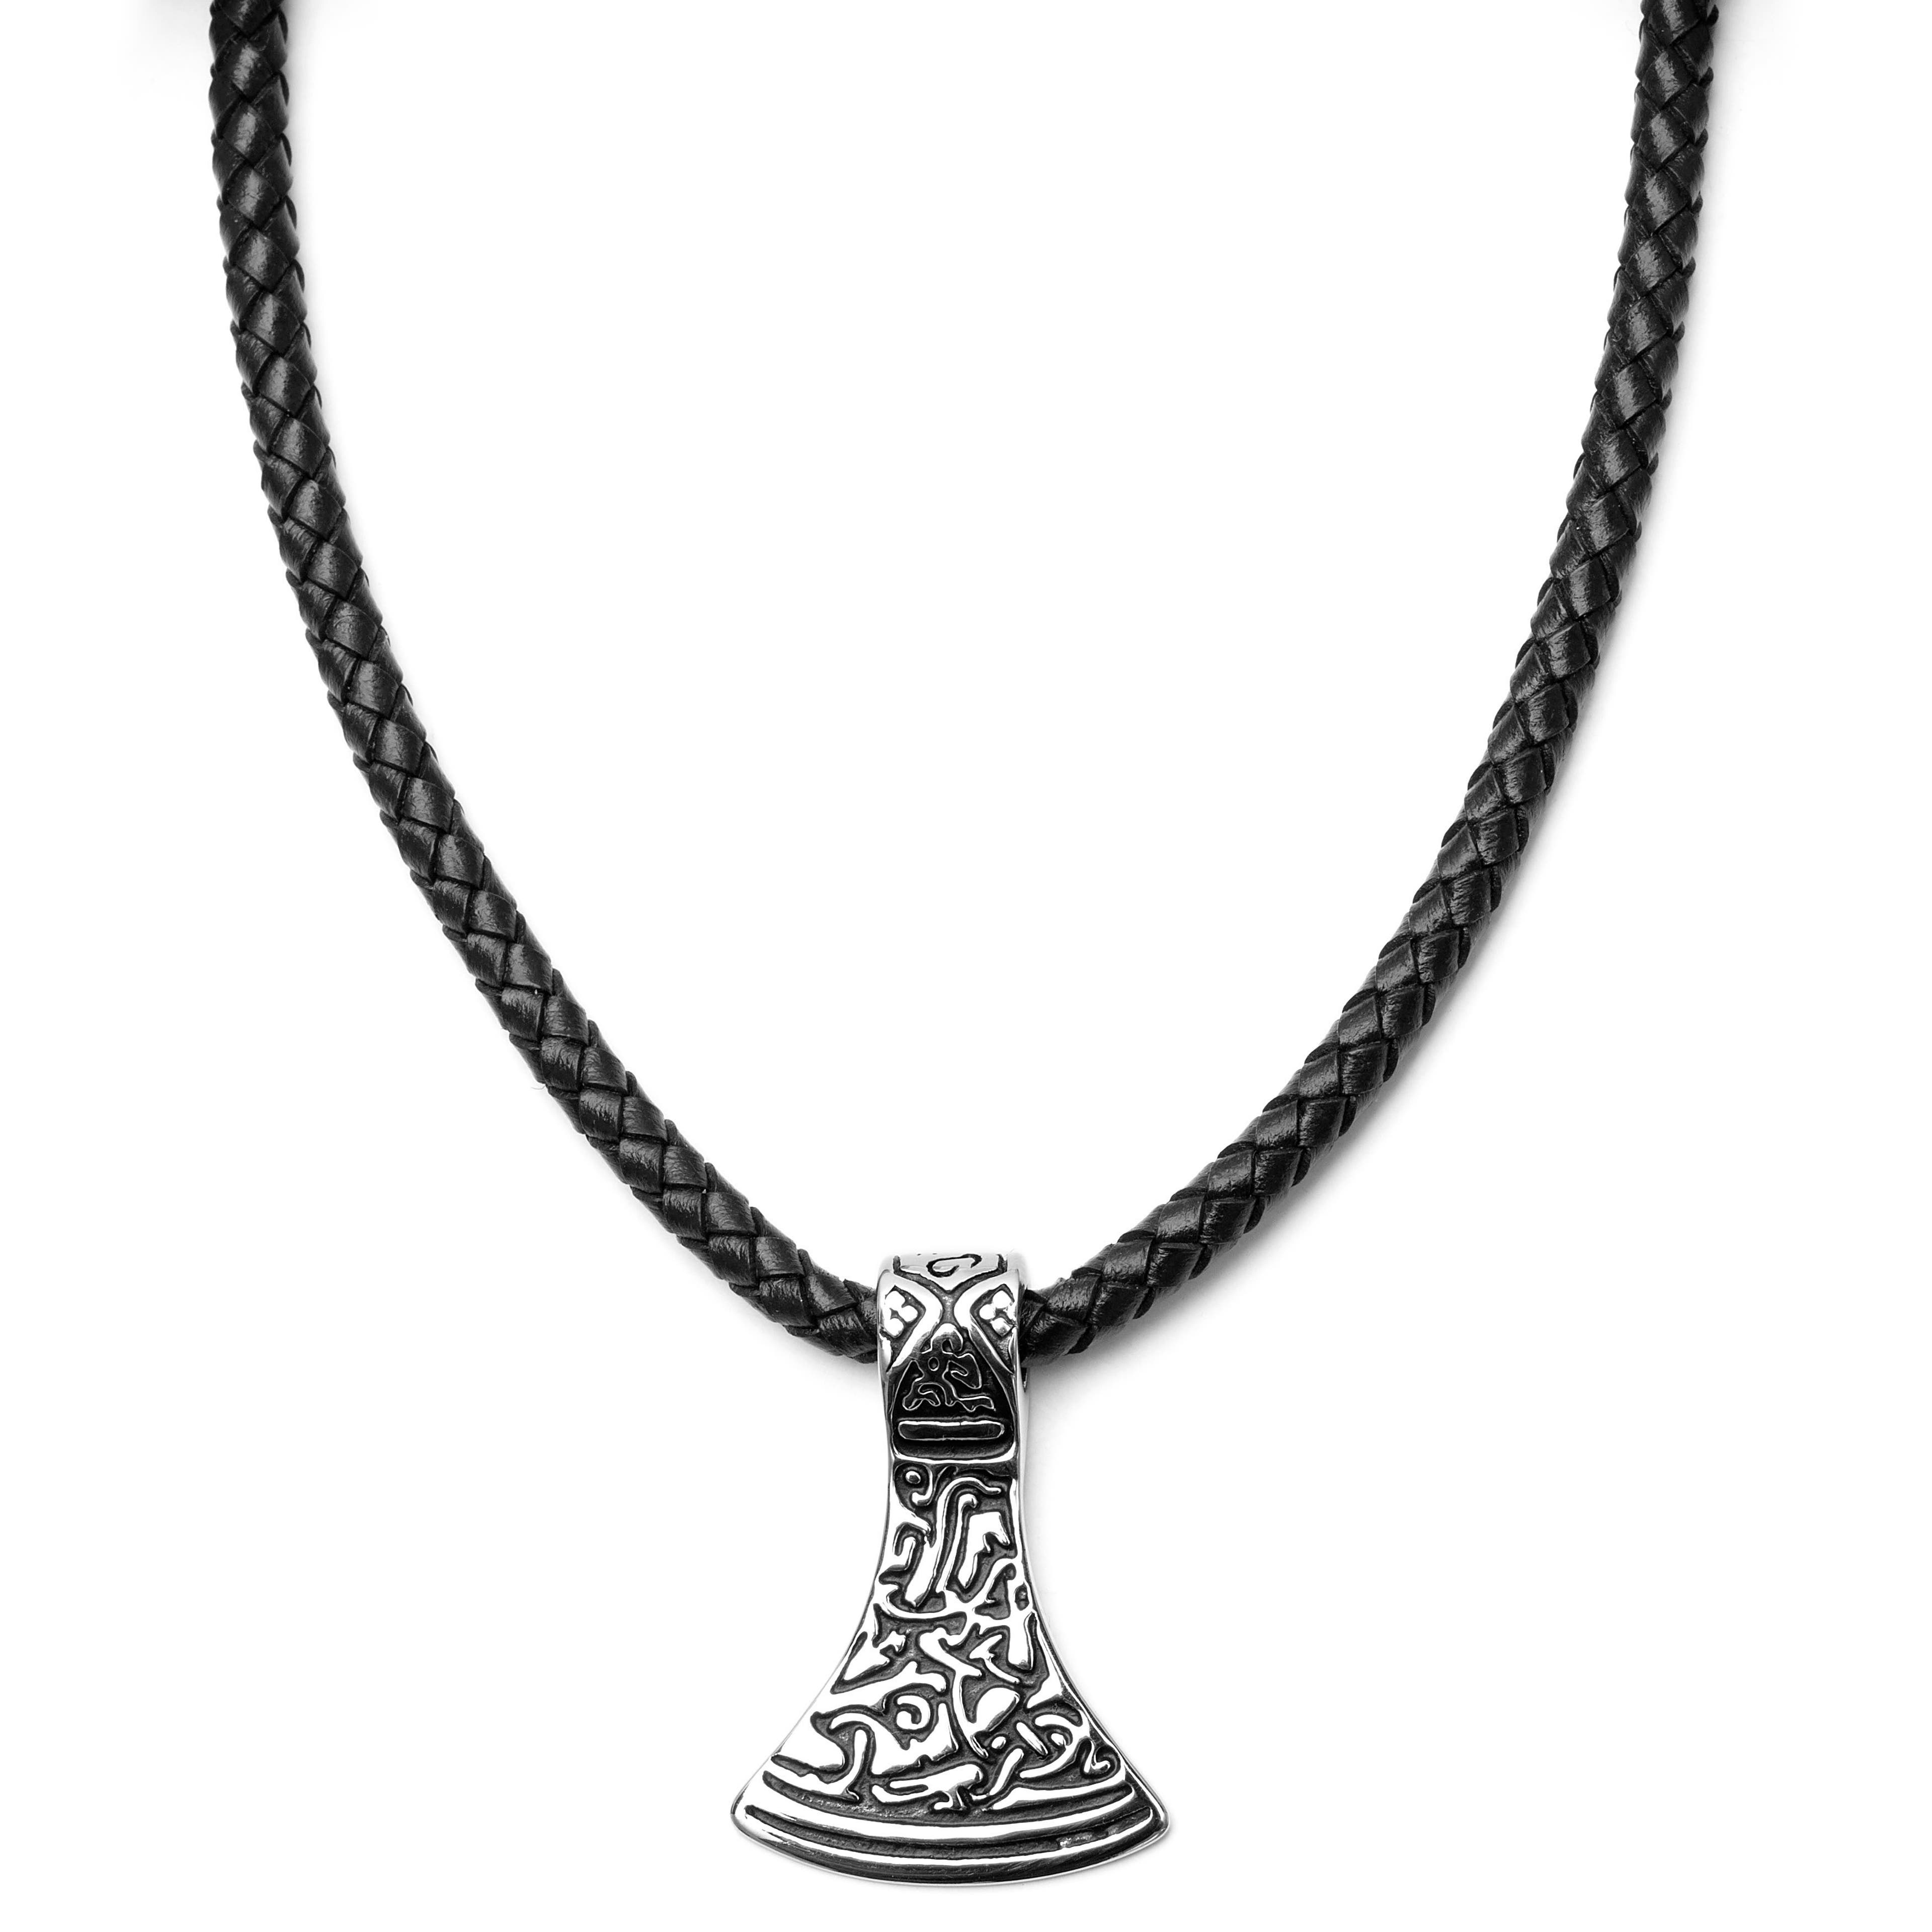 Collana con rune incise su pendente argentato e cordino in pelle marrone